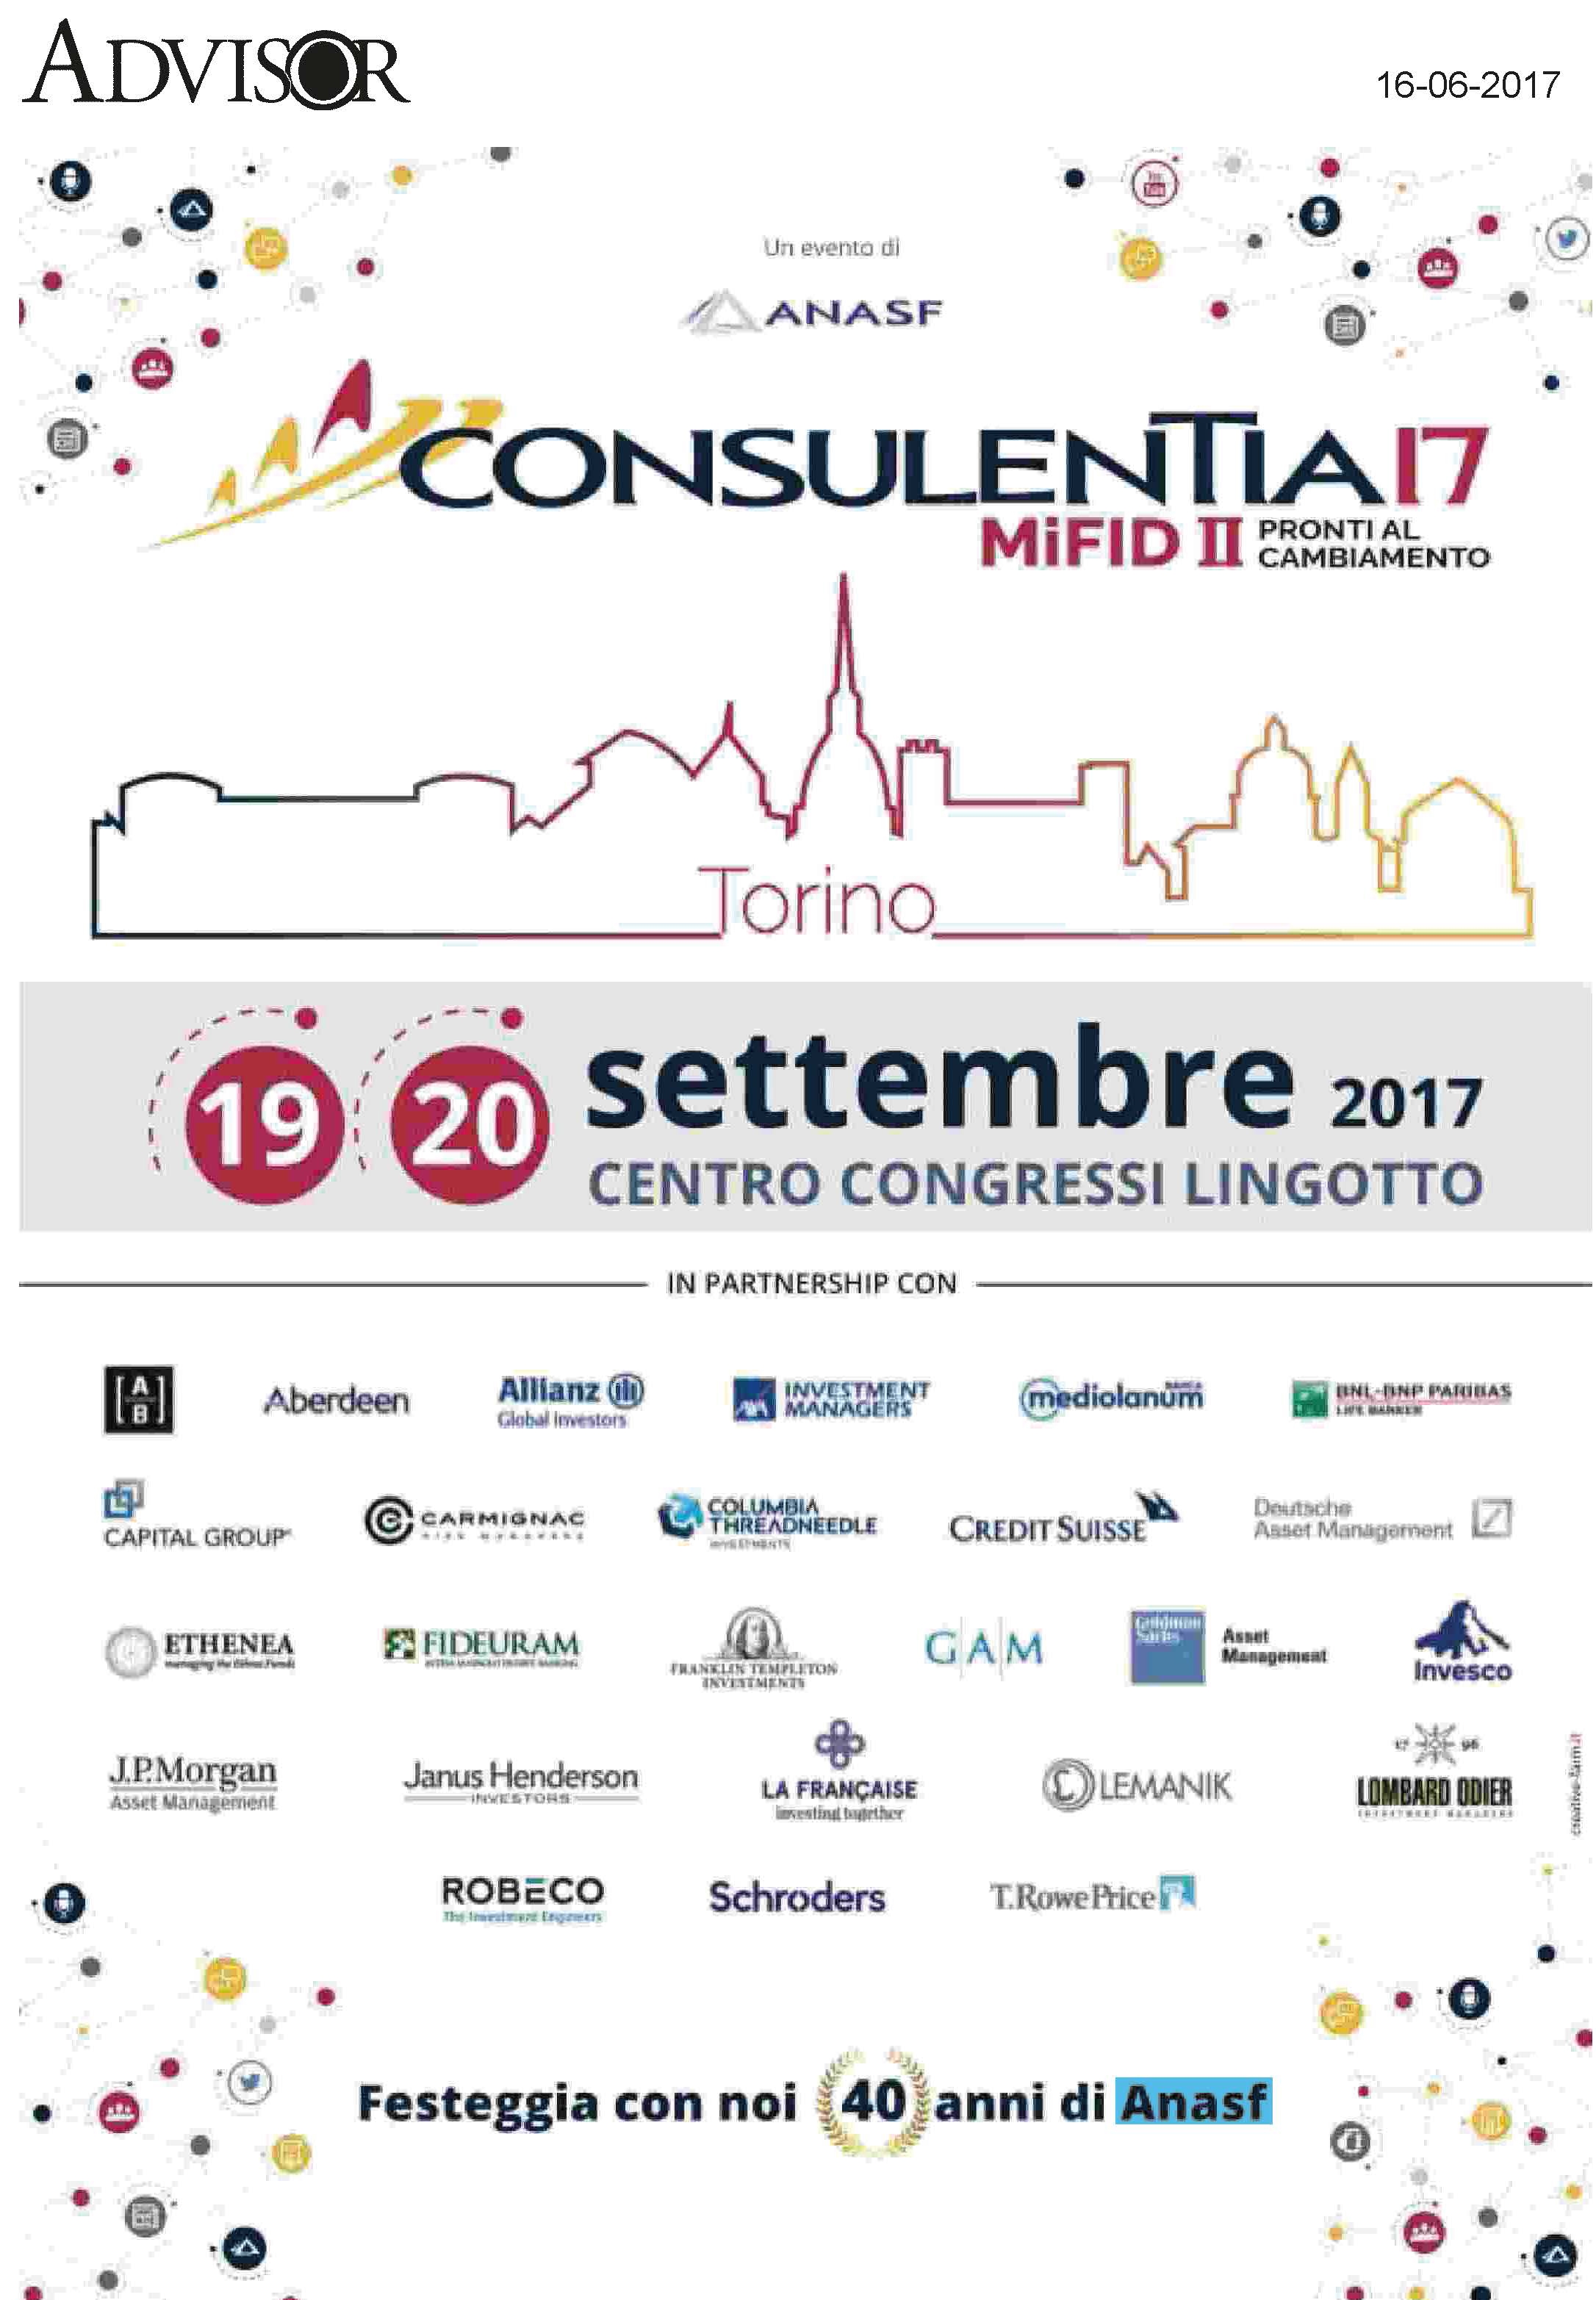 La pubblicità di ConsulenTia17 Roma è su Advisor